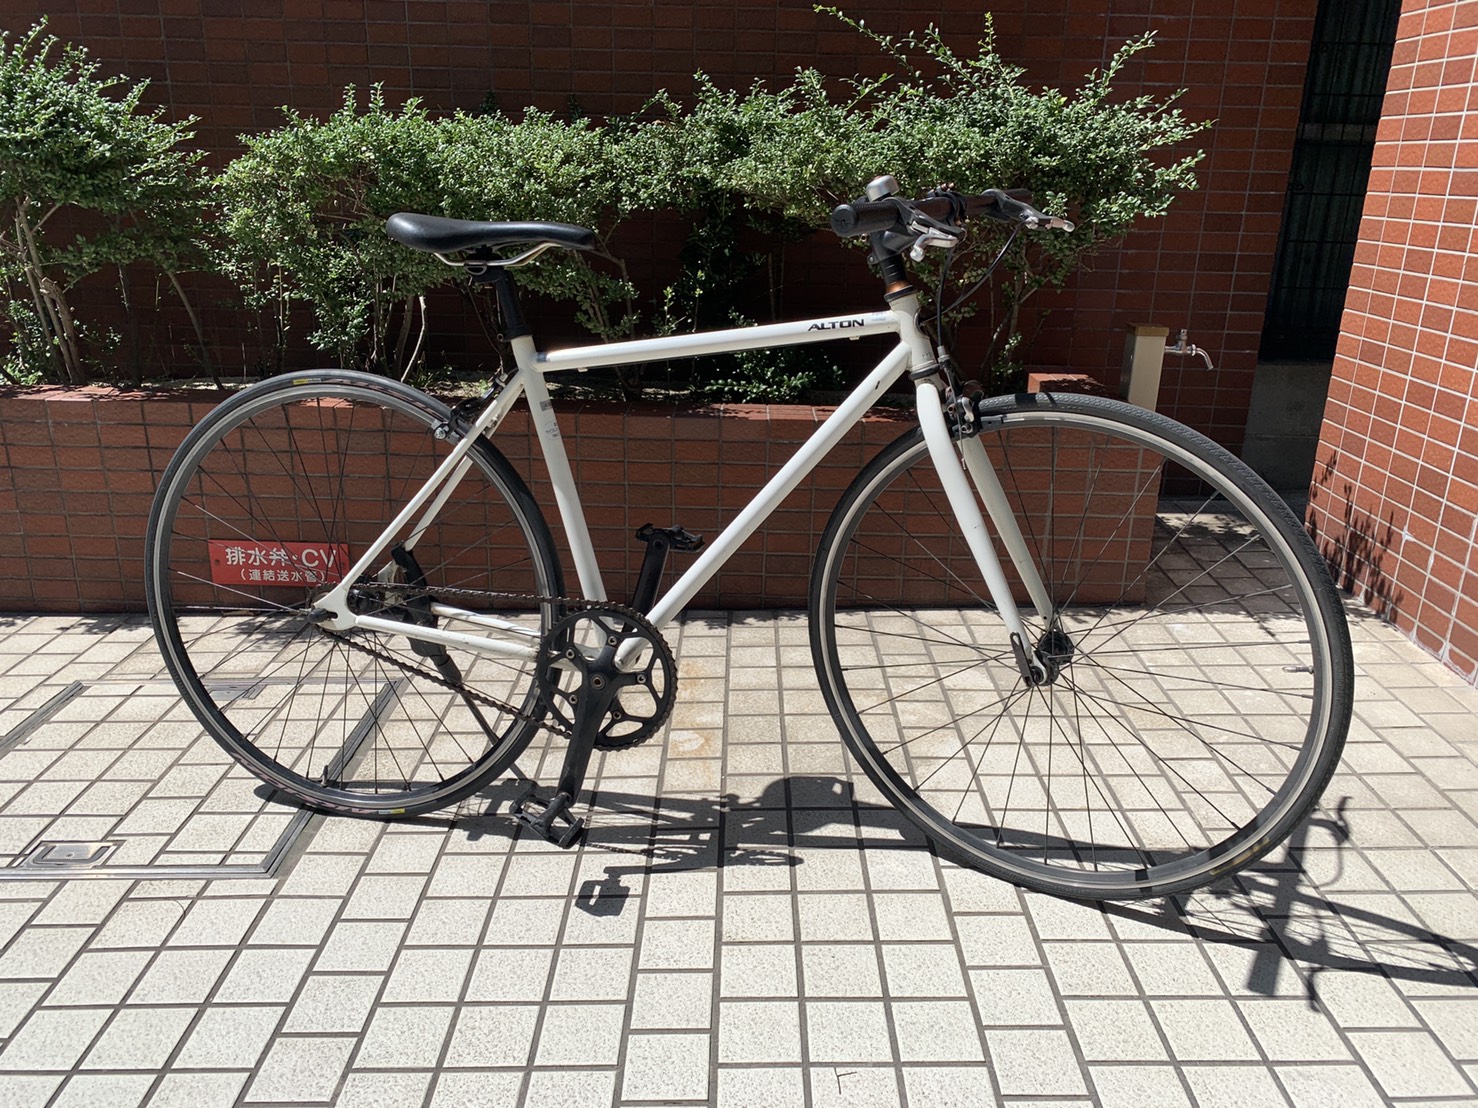 ピストバイク（シングルスピード）(中古) 700C入荷しました。【売切れ御礼】【博多駅前の自転車屋「銀の風」】 | 銀の風